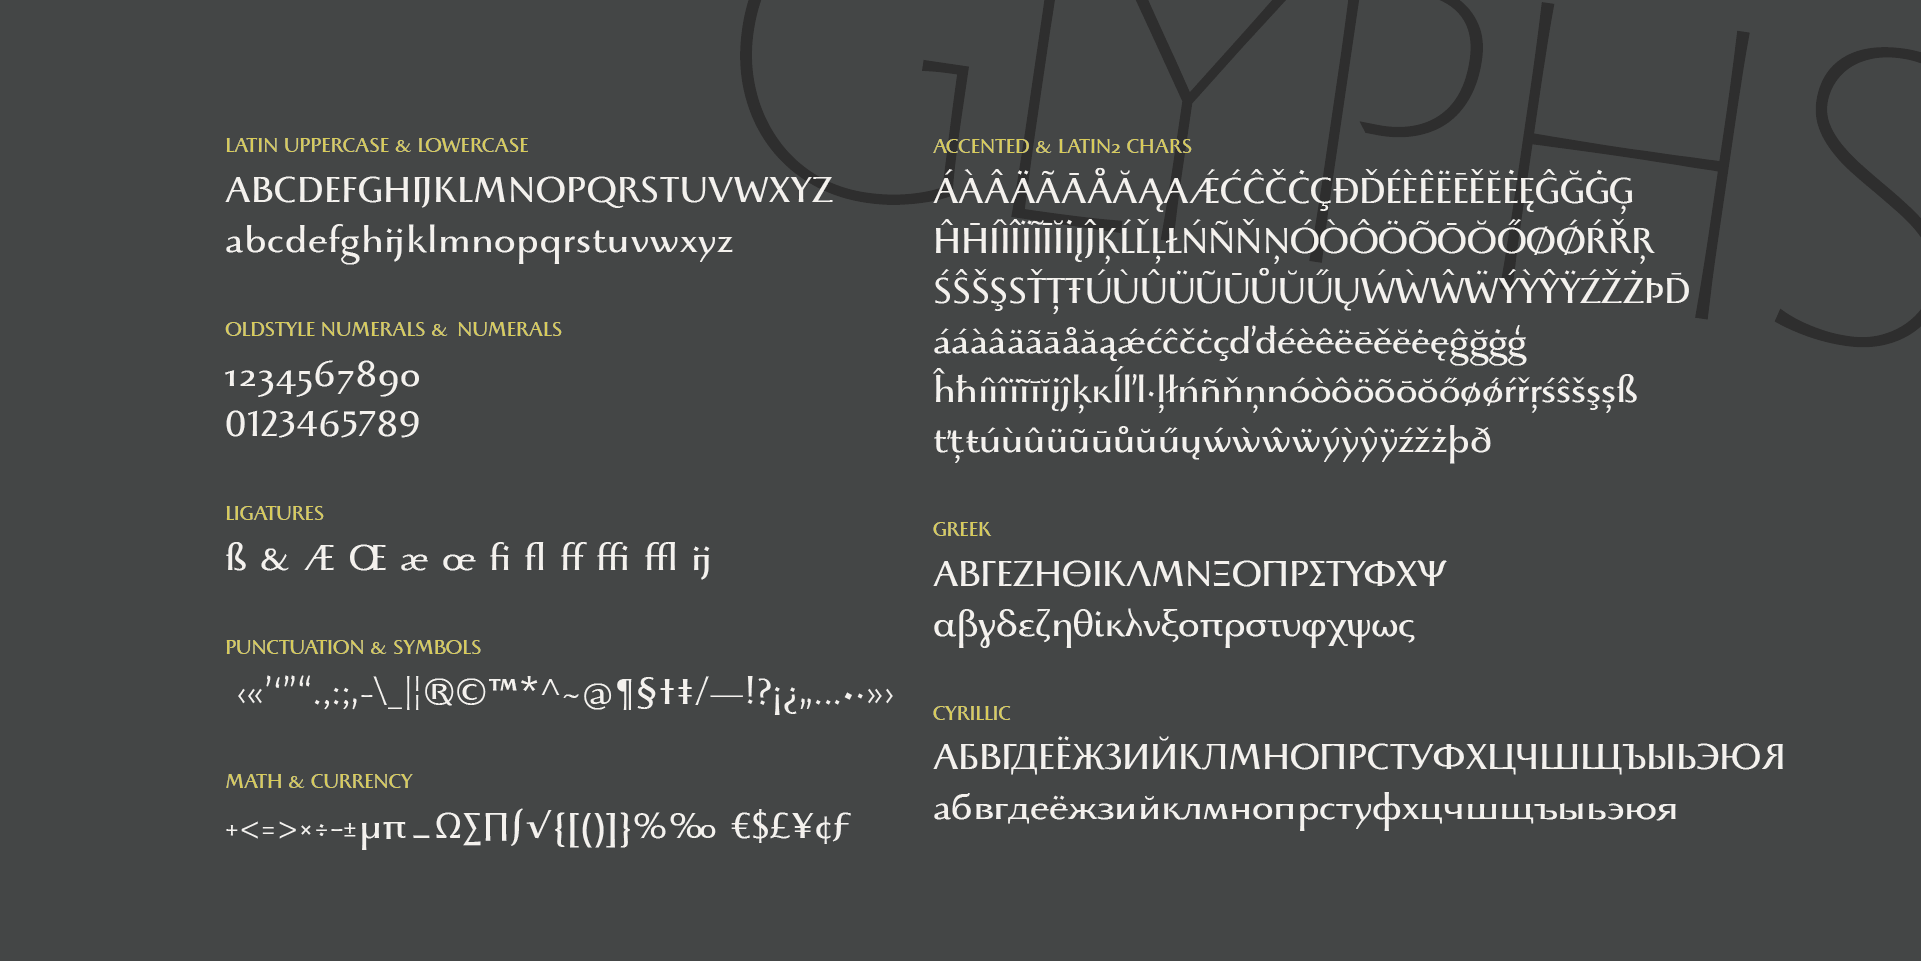 Beatrix Antiqua Semi Bold Font preview